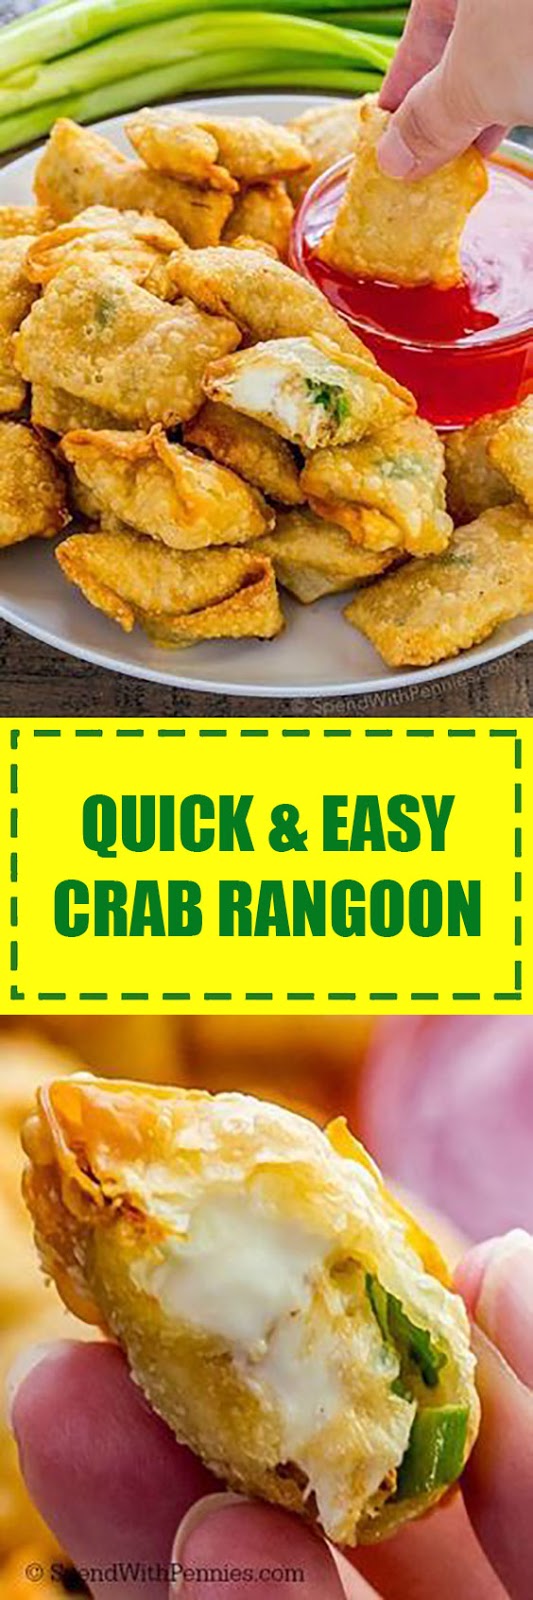 Quick & Easy Crab Rangoon